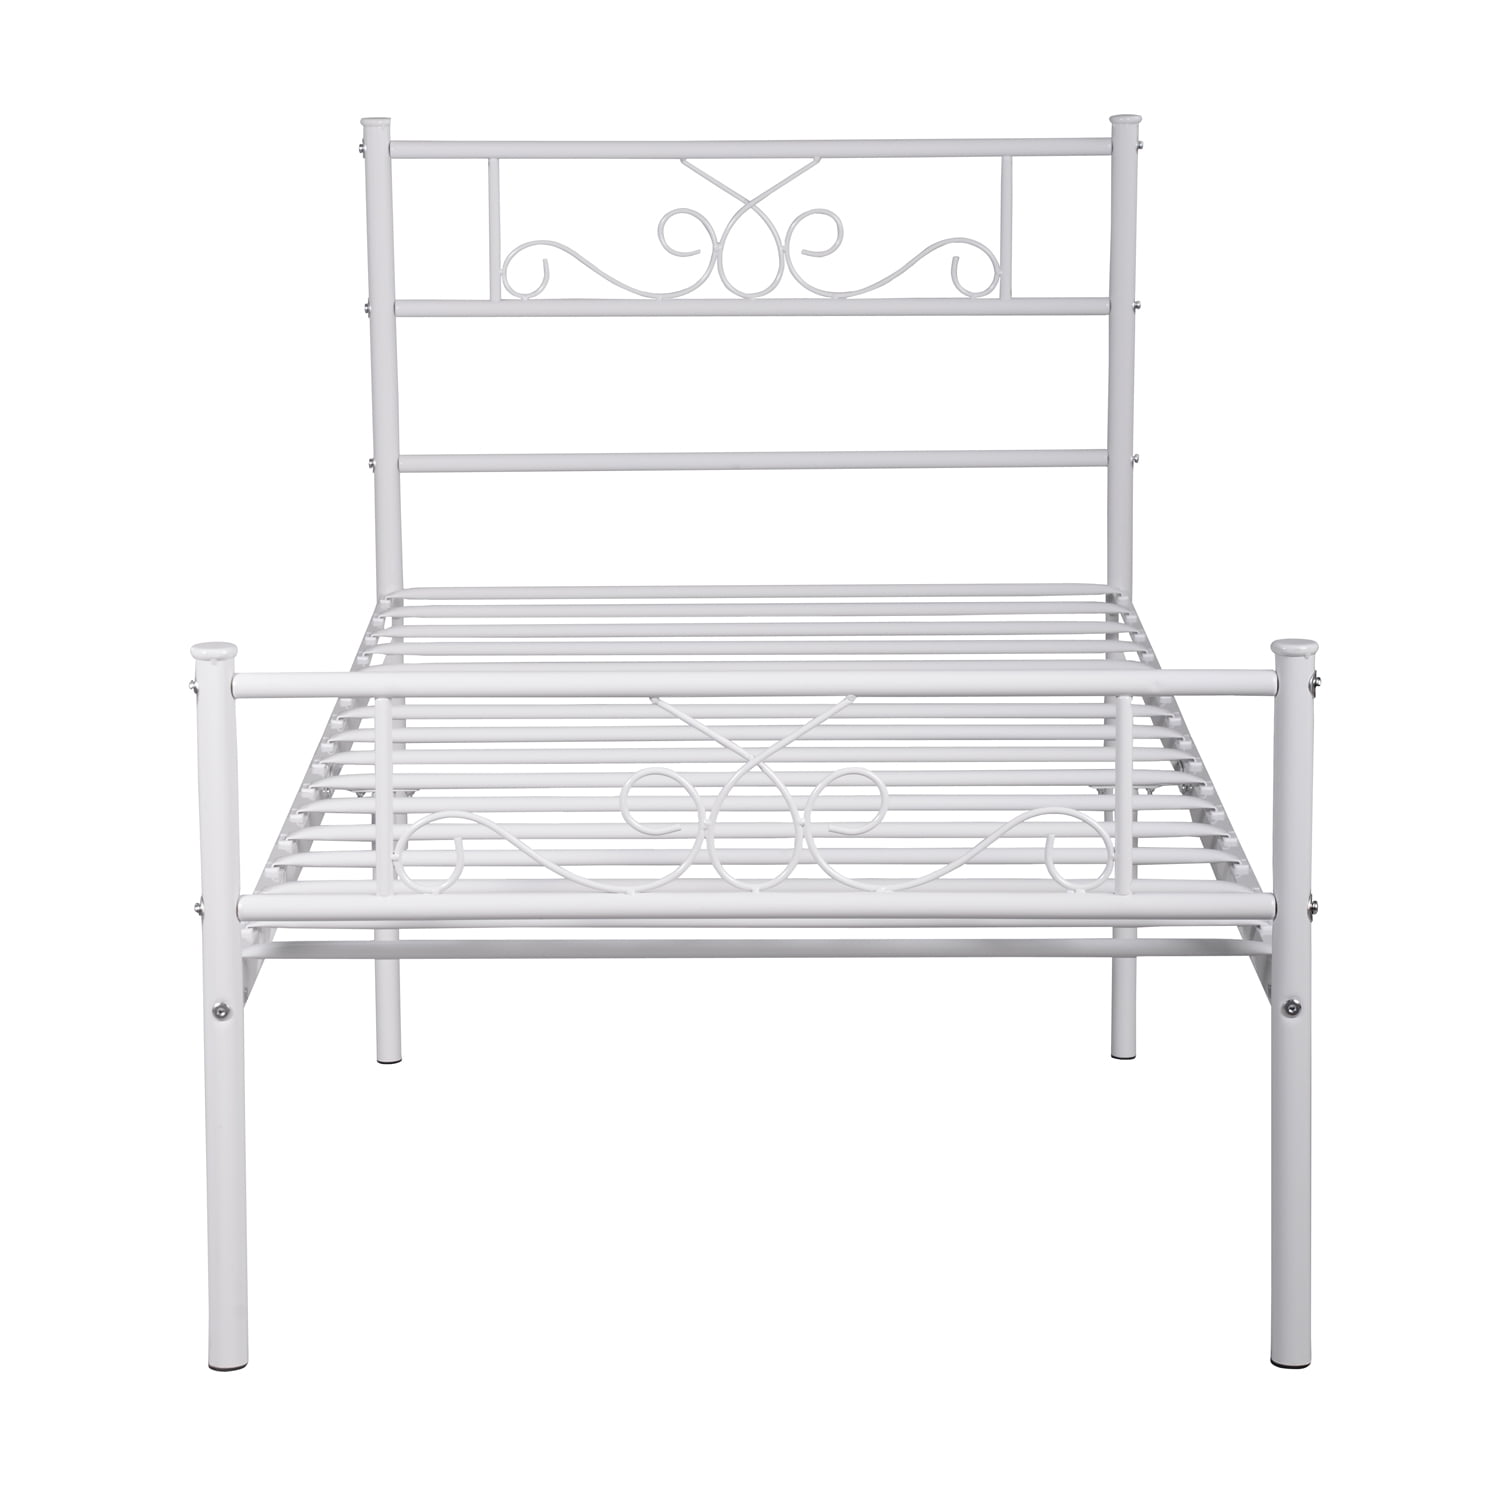 Easy Set Up Premium Metal Bed Platform, Metal Bed Frame Bench Instructions